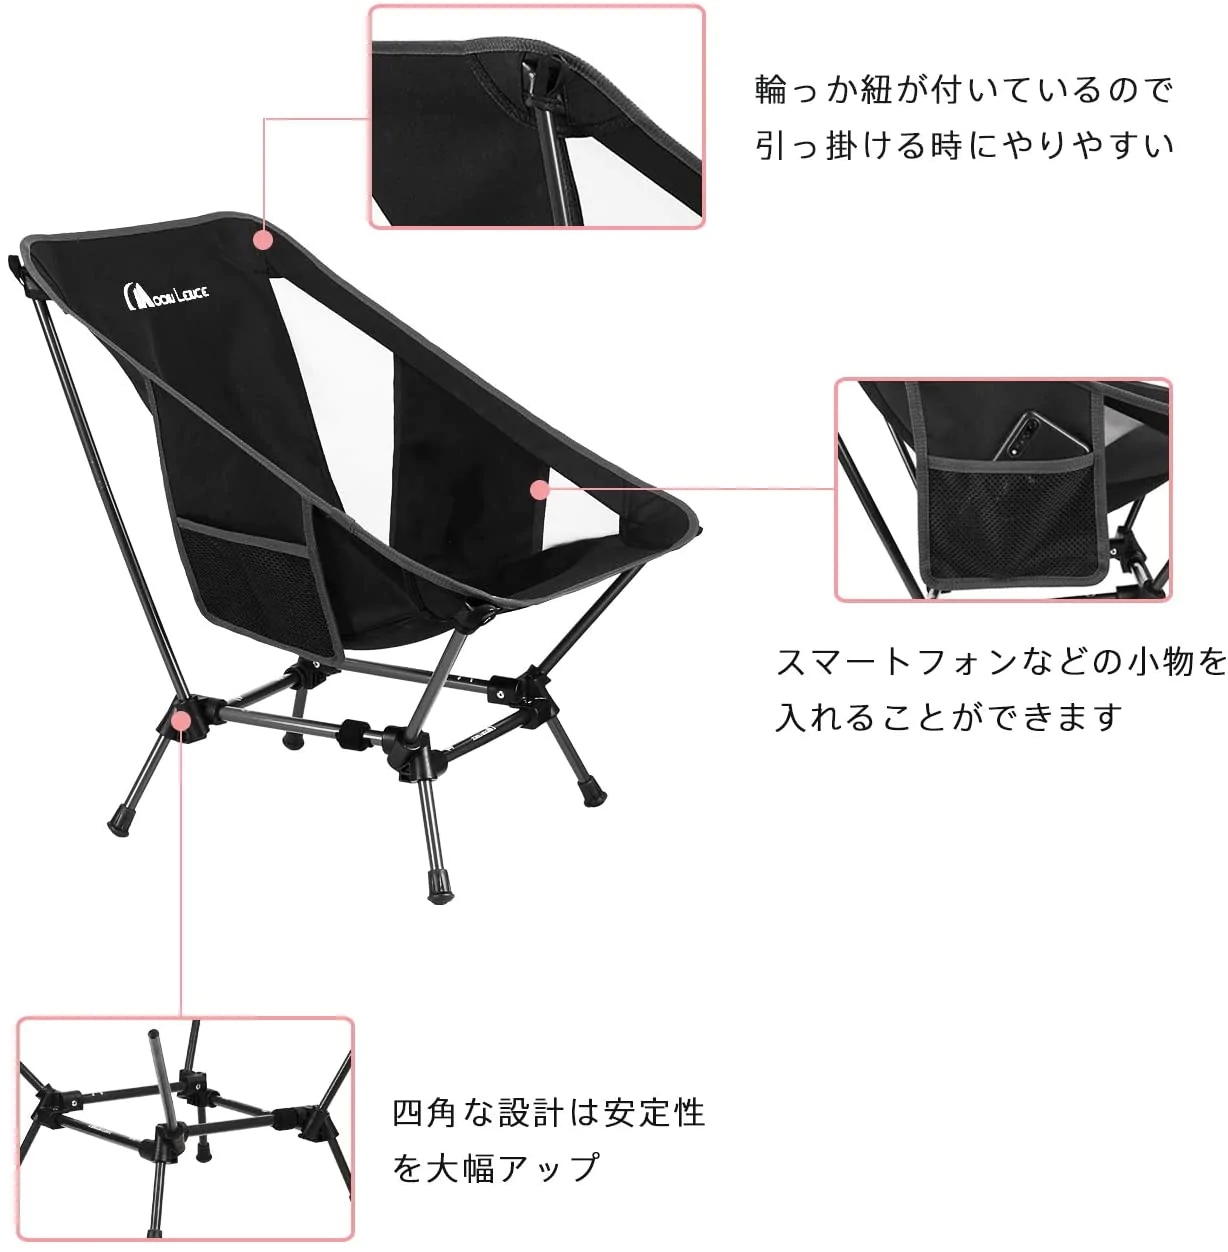 moon-lence-chair